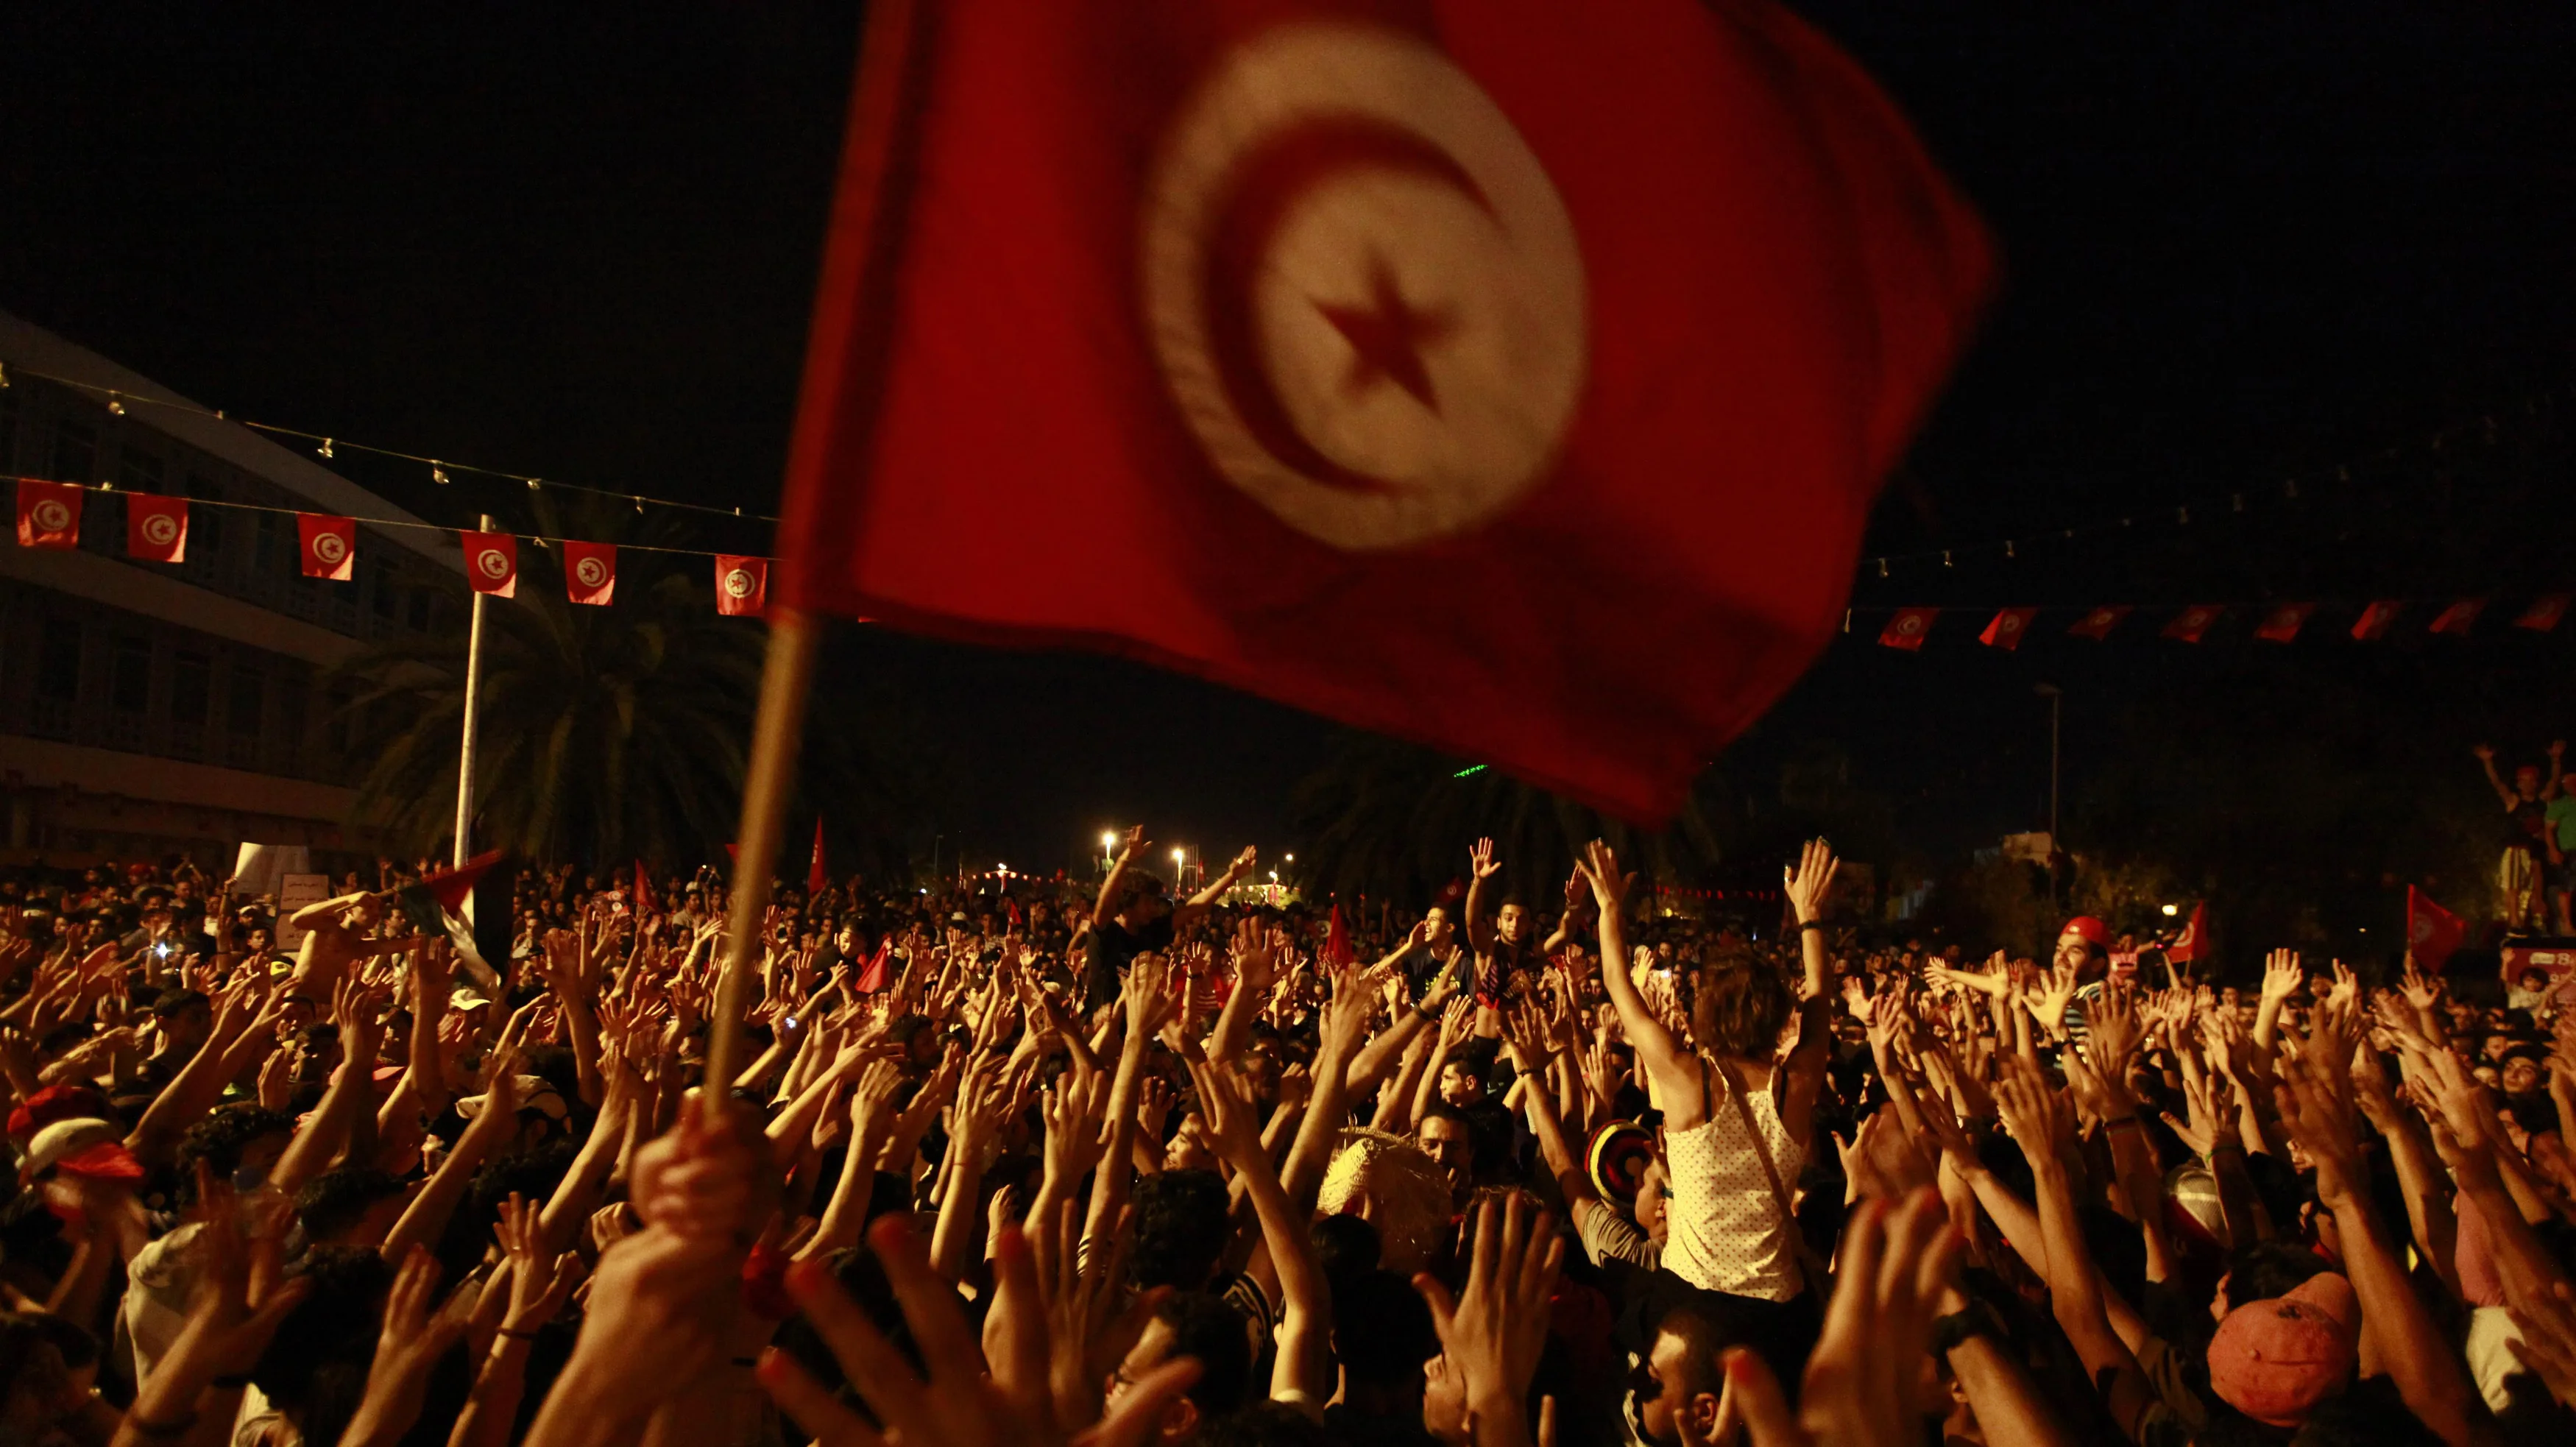 tunisia-politics_wide-74aba5999c2dcd09e11fdc478a14483f5e0a9a38